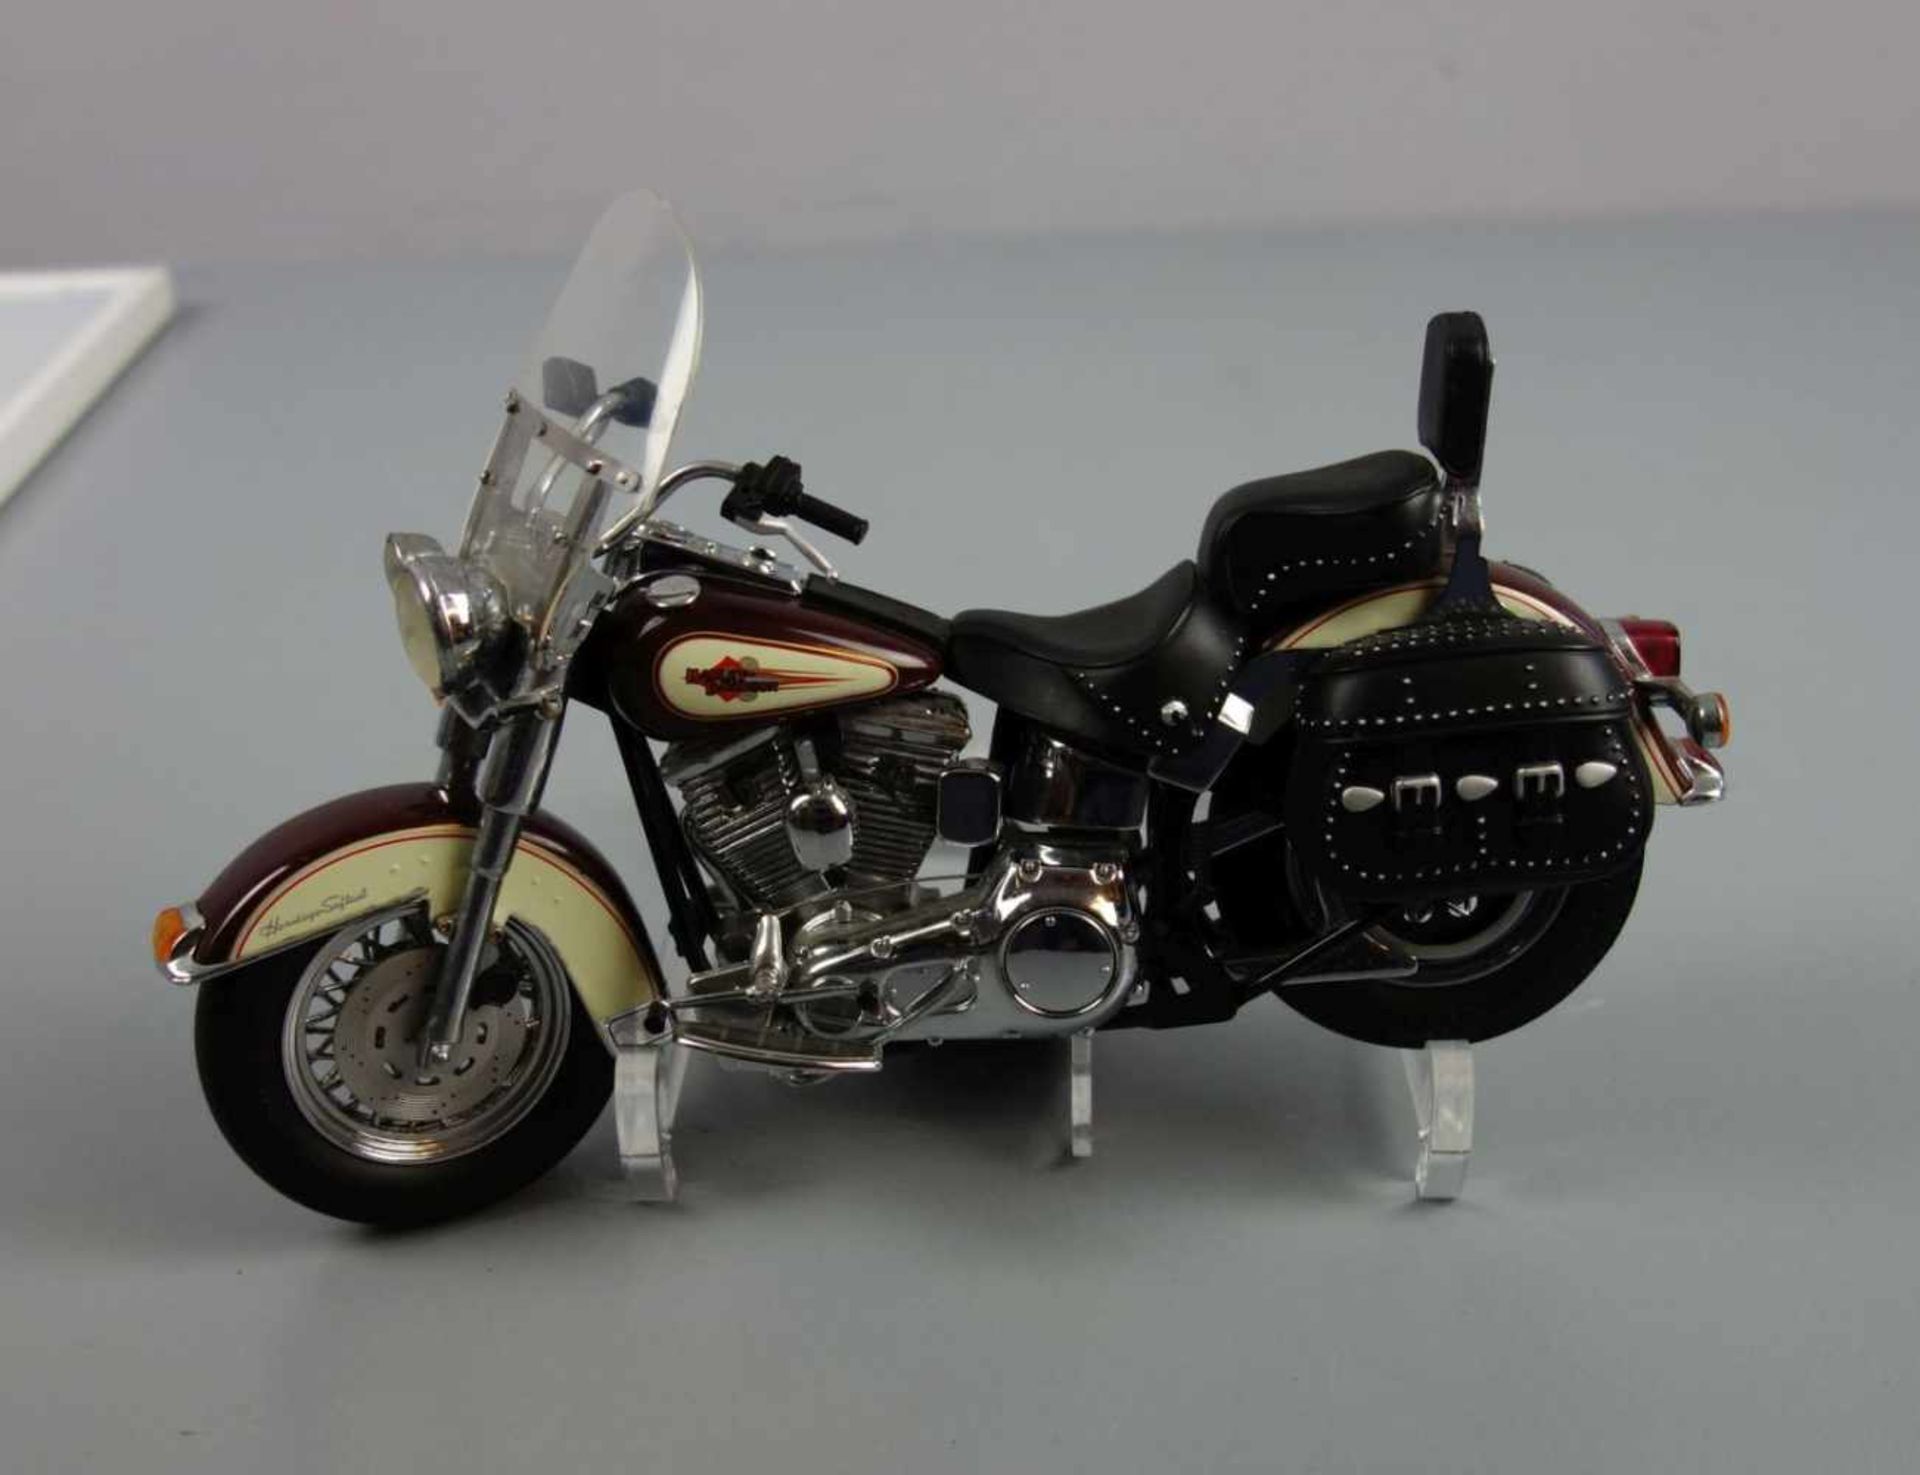 HARLEY DAVIDSON - MOTORRAD - MODELL: Franklin Mint Precision Models "Harley Davidson Heritage